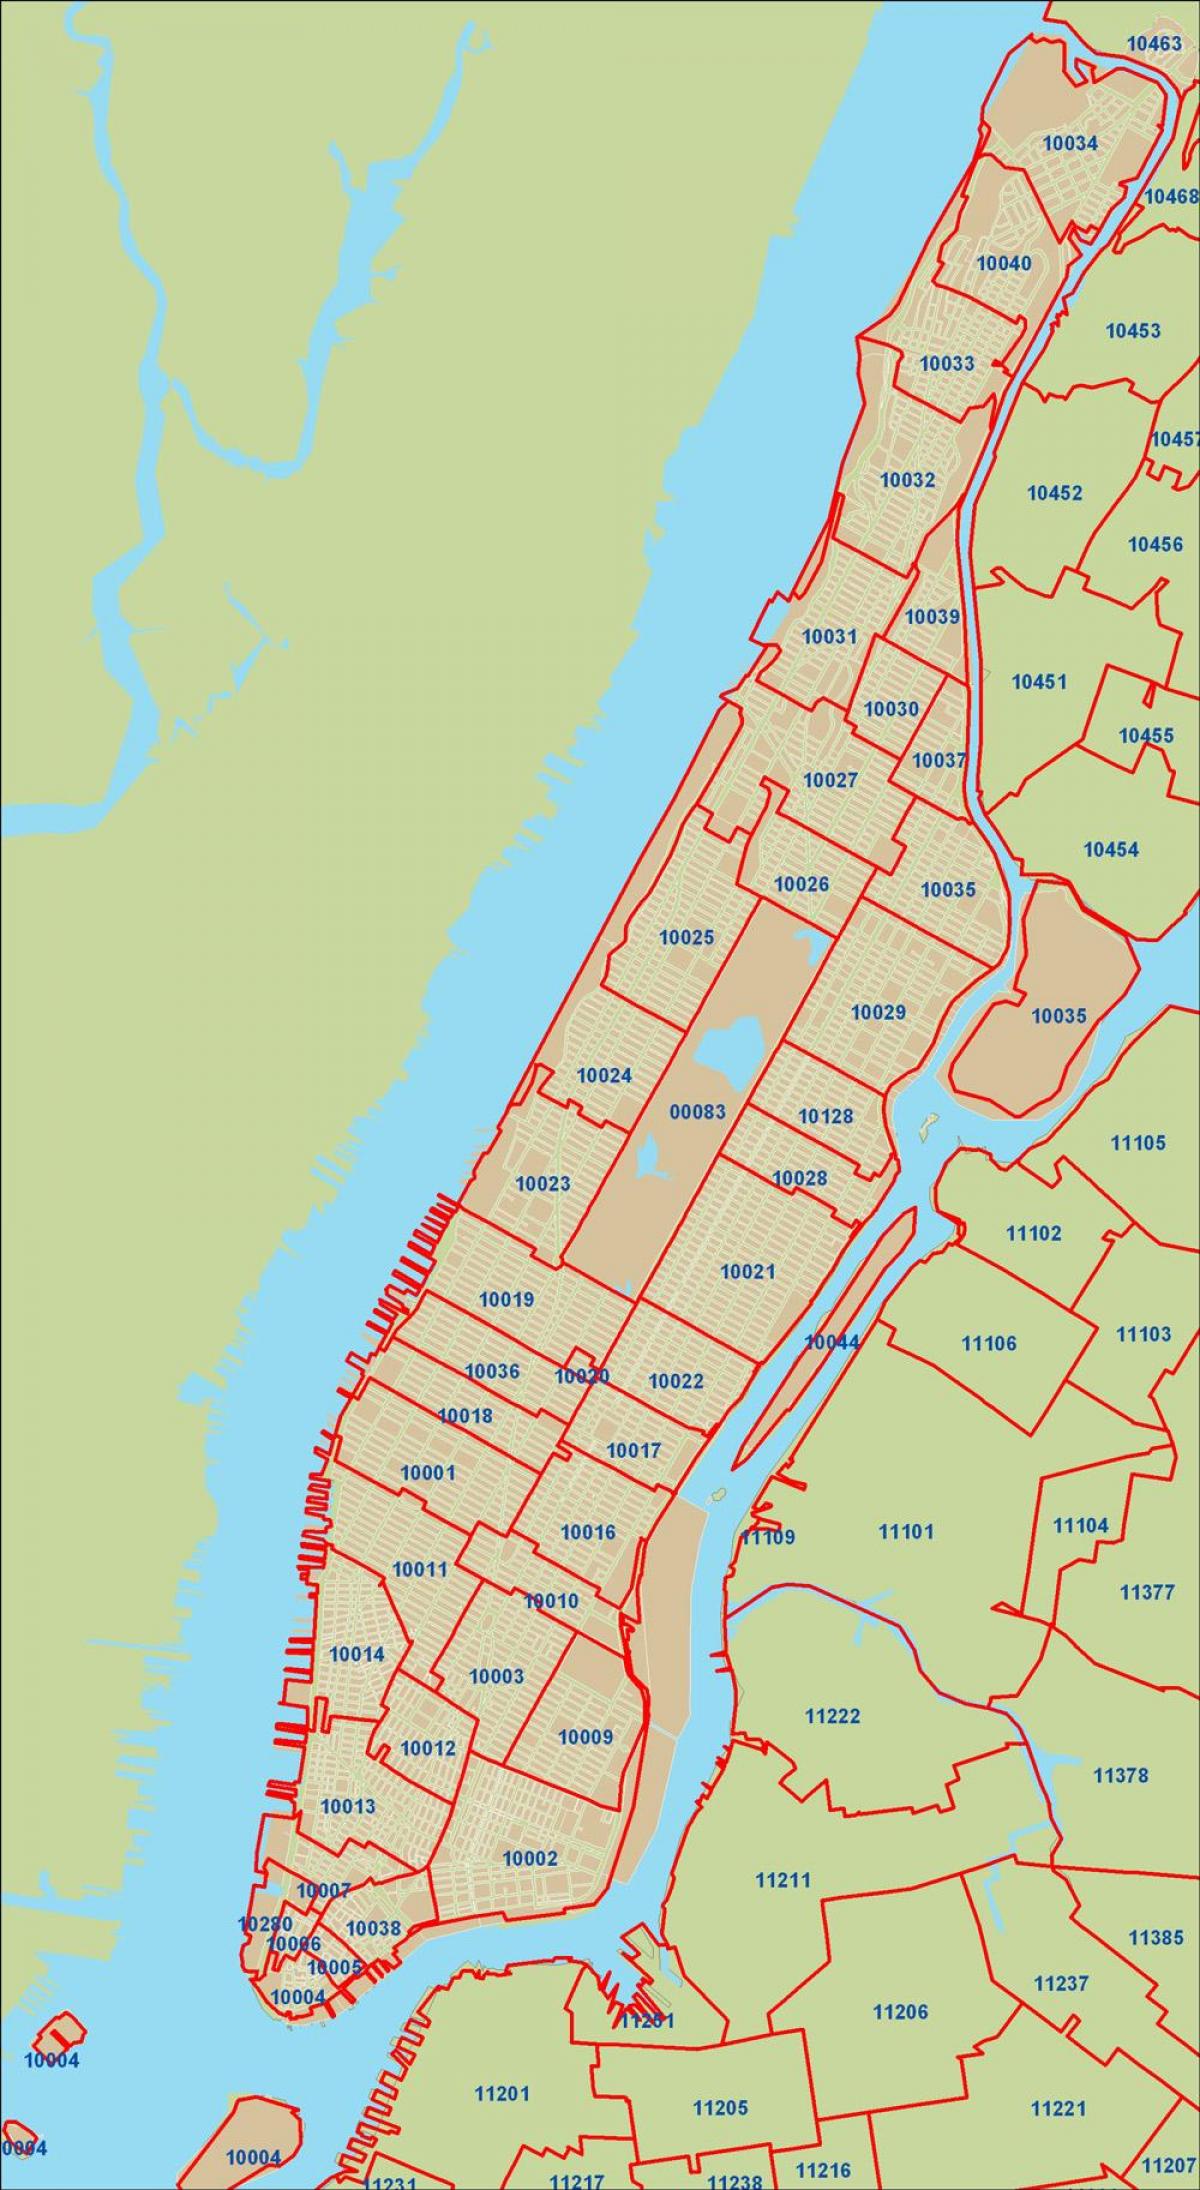 NYC ज़िप कोड नक्शा मैनहट्टन